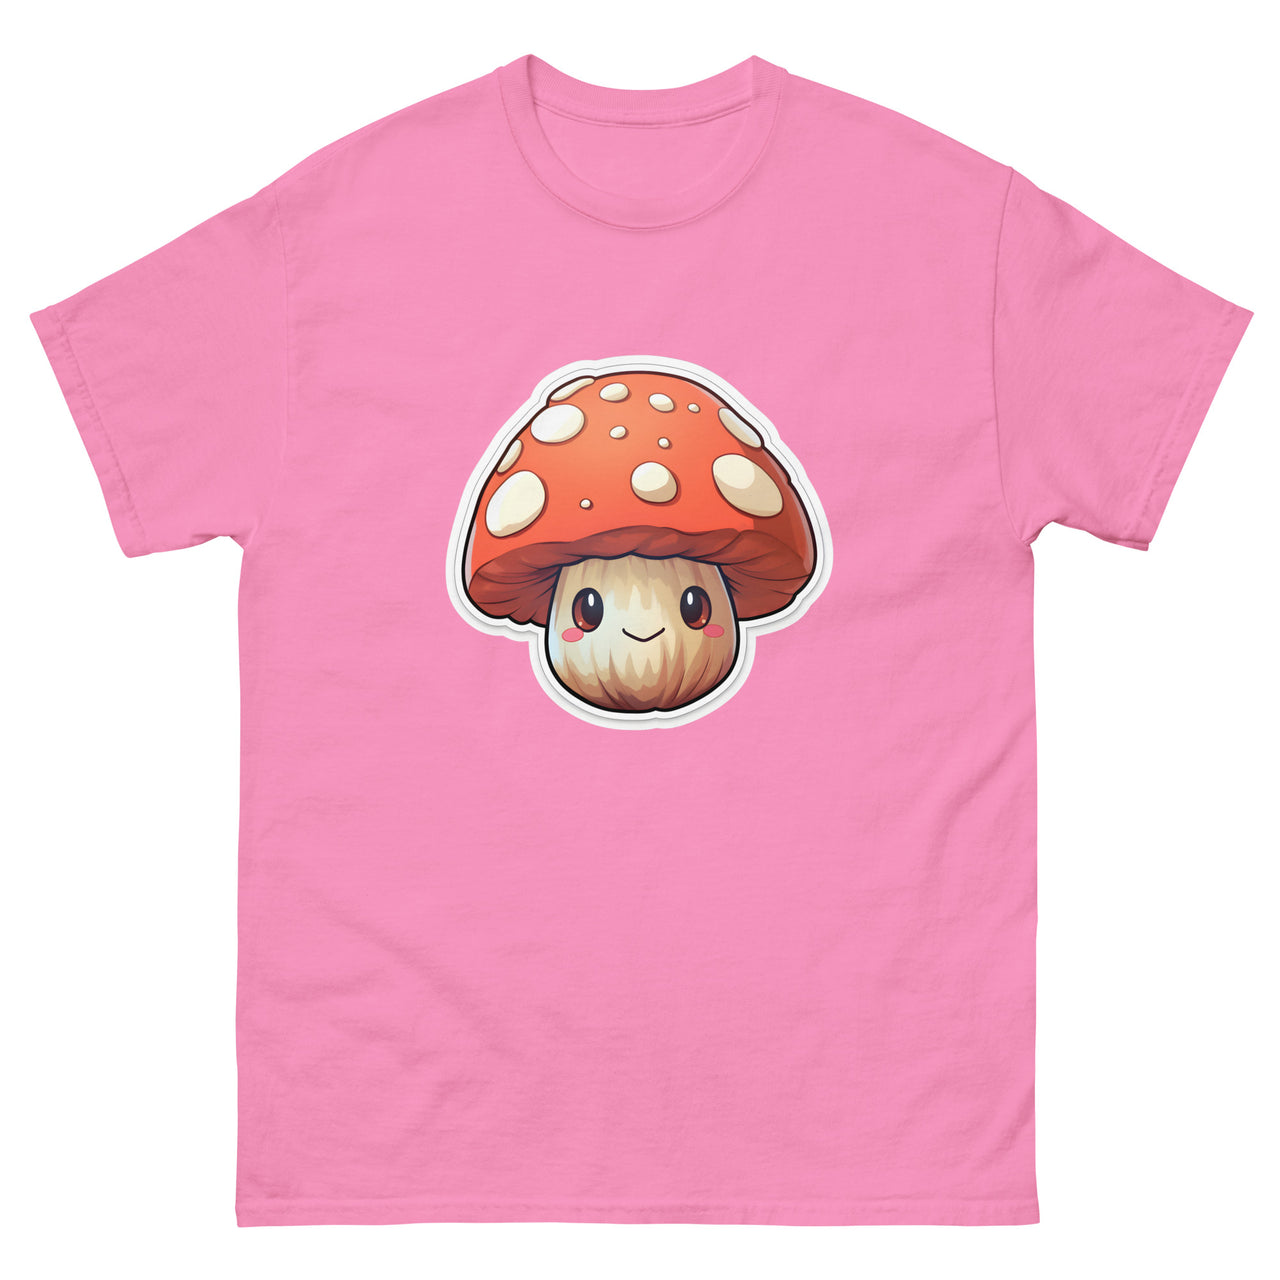 Smiling Anime Mushroom T-Shirt